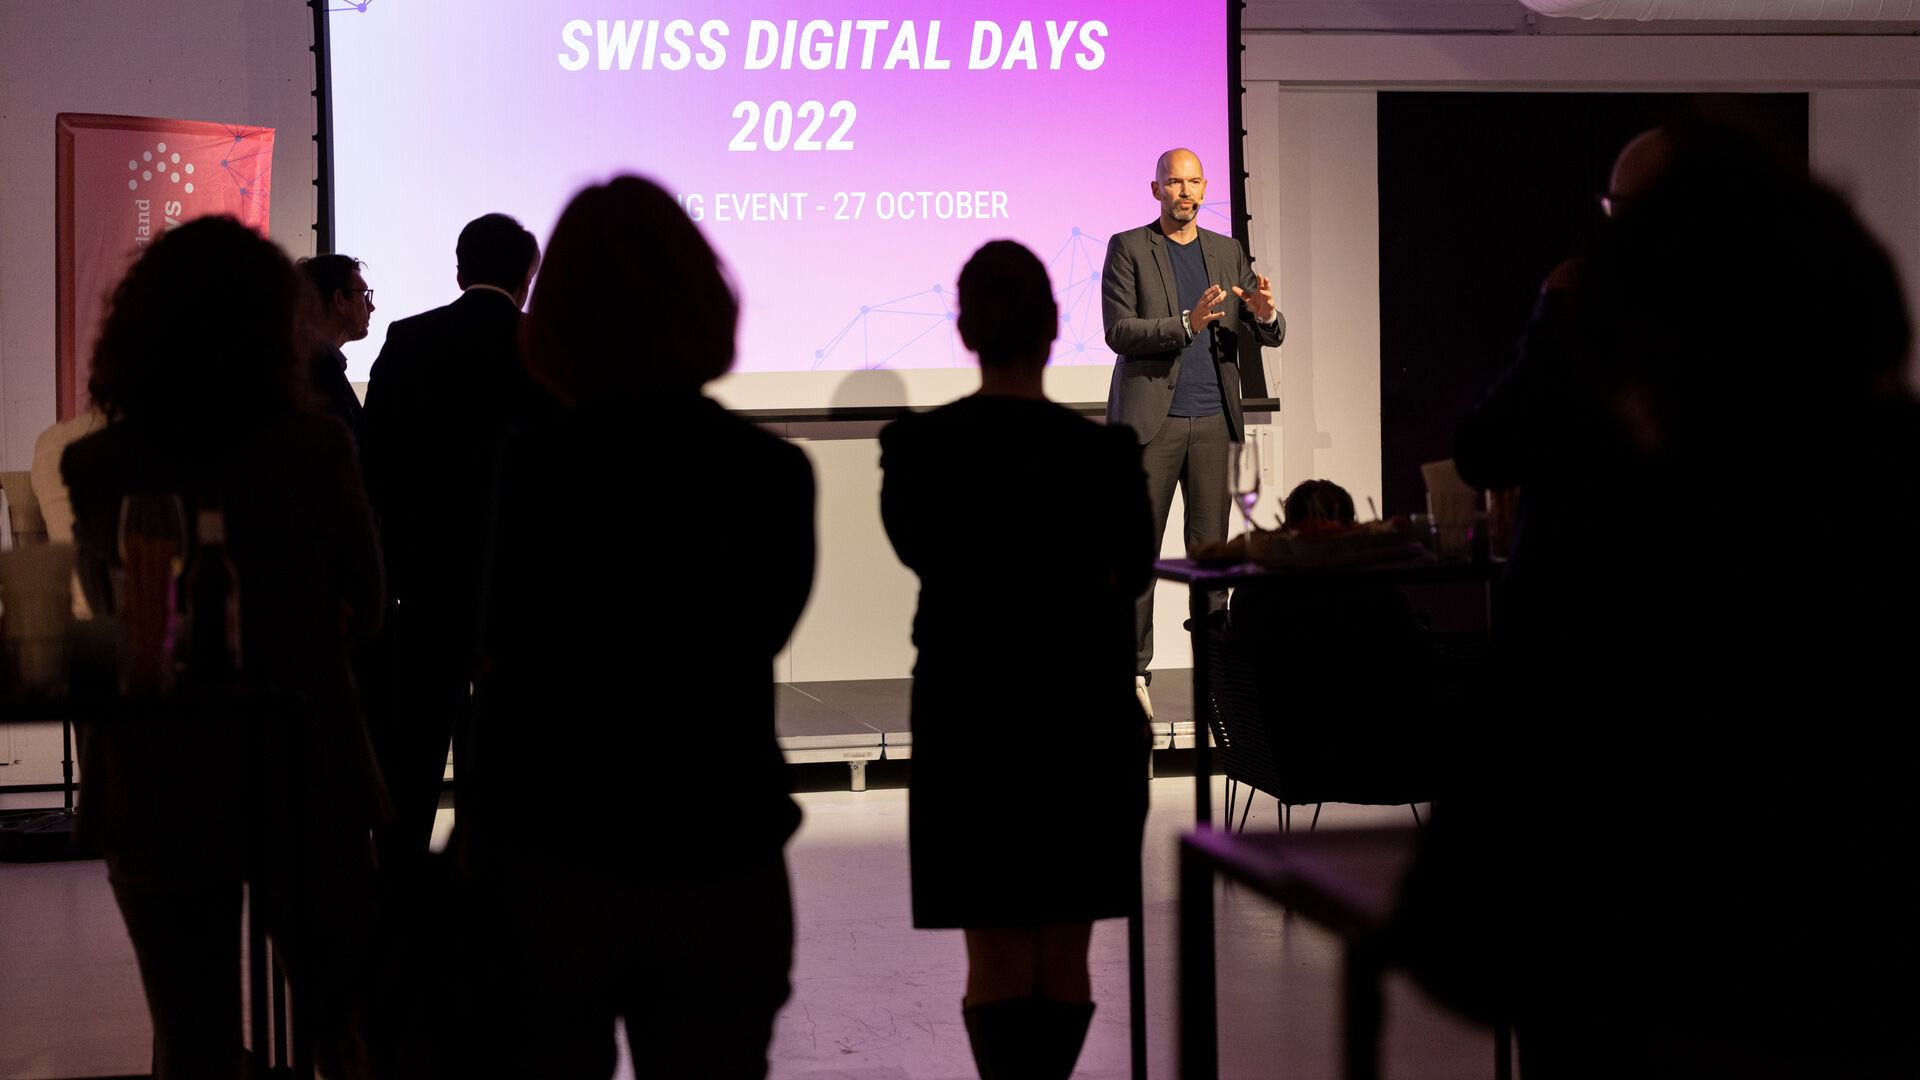 Giornate Digitali Svizzere: l’evento conclusivo delle “Giornate Digitali Svizzere” 2022 alla Freiruum di Zugo (Zugo) il 27 ottobre